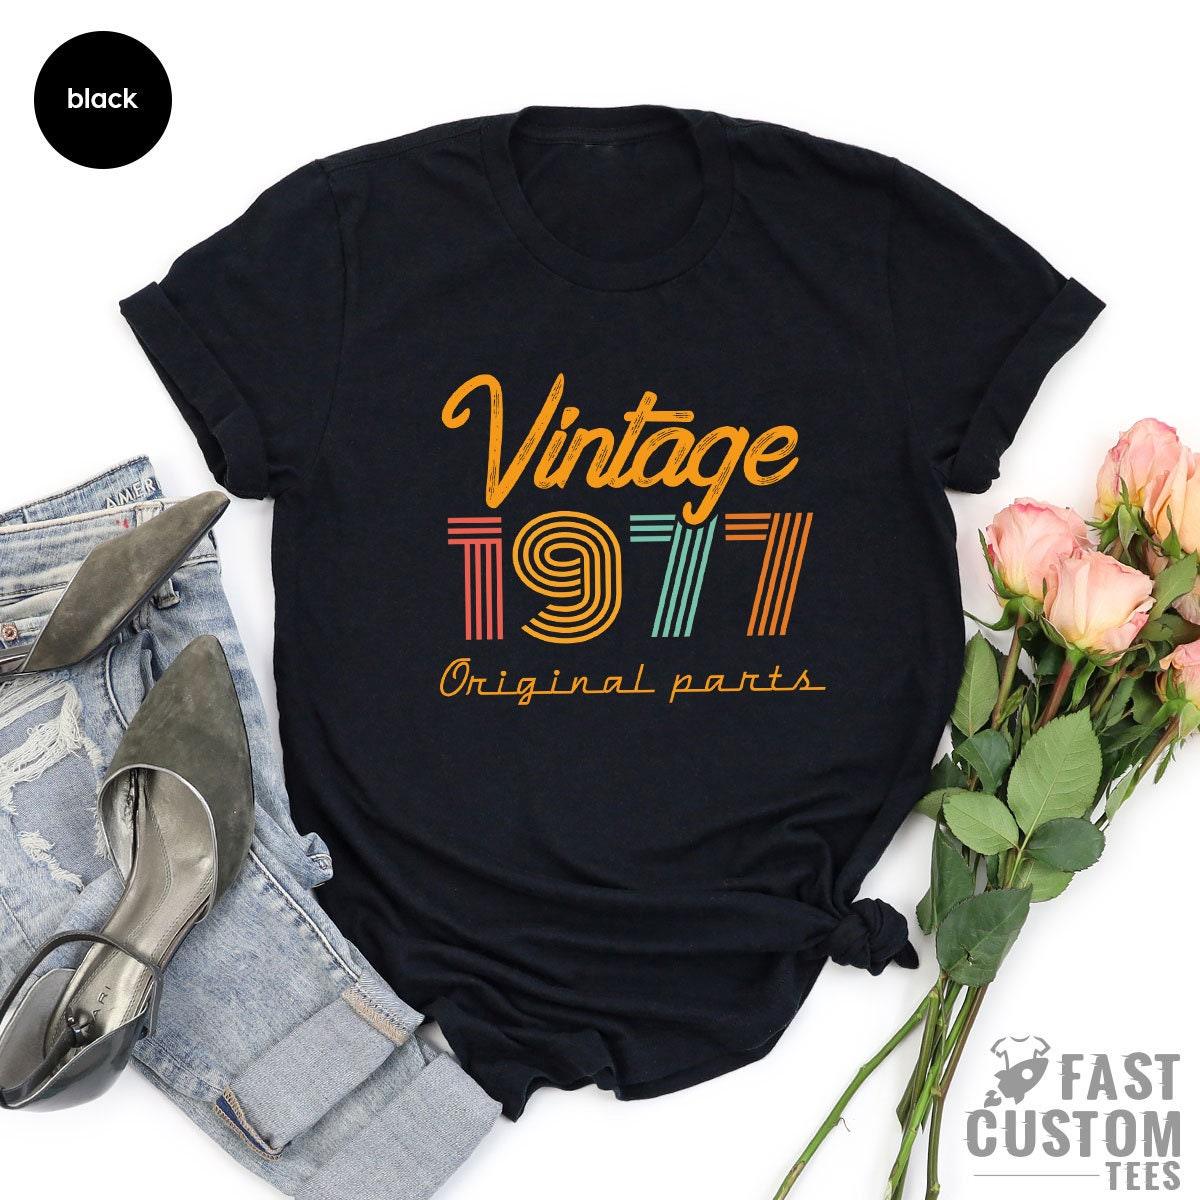 44th Birthday T-Shirt, Vintage T Shirt, Vintage 1977 Shirt, 44th Birthday Gift For Women, 44th Birthday Shirt Men, Retro Shirt, Vintage Shirts - Fastdeliverytees.com